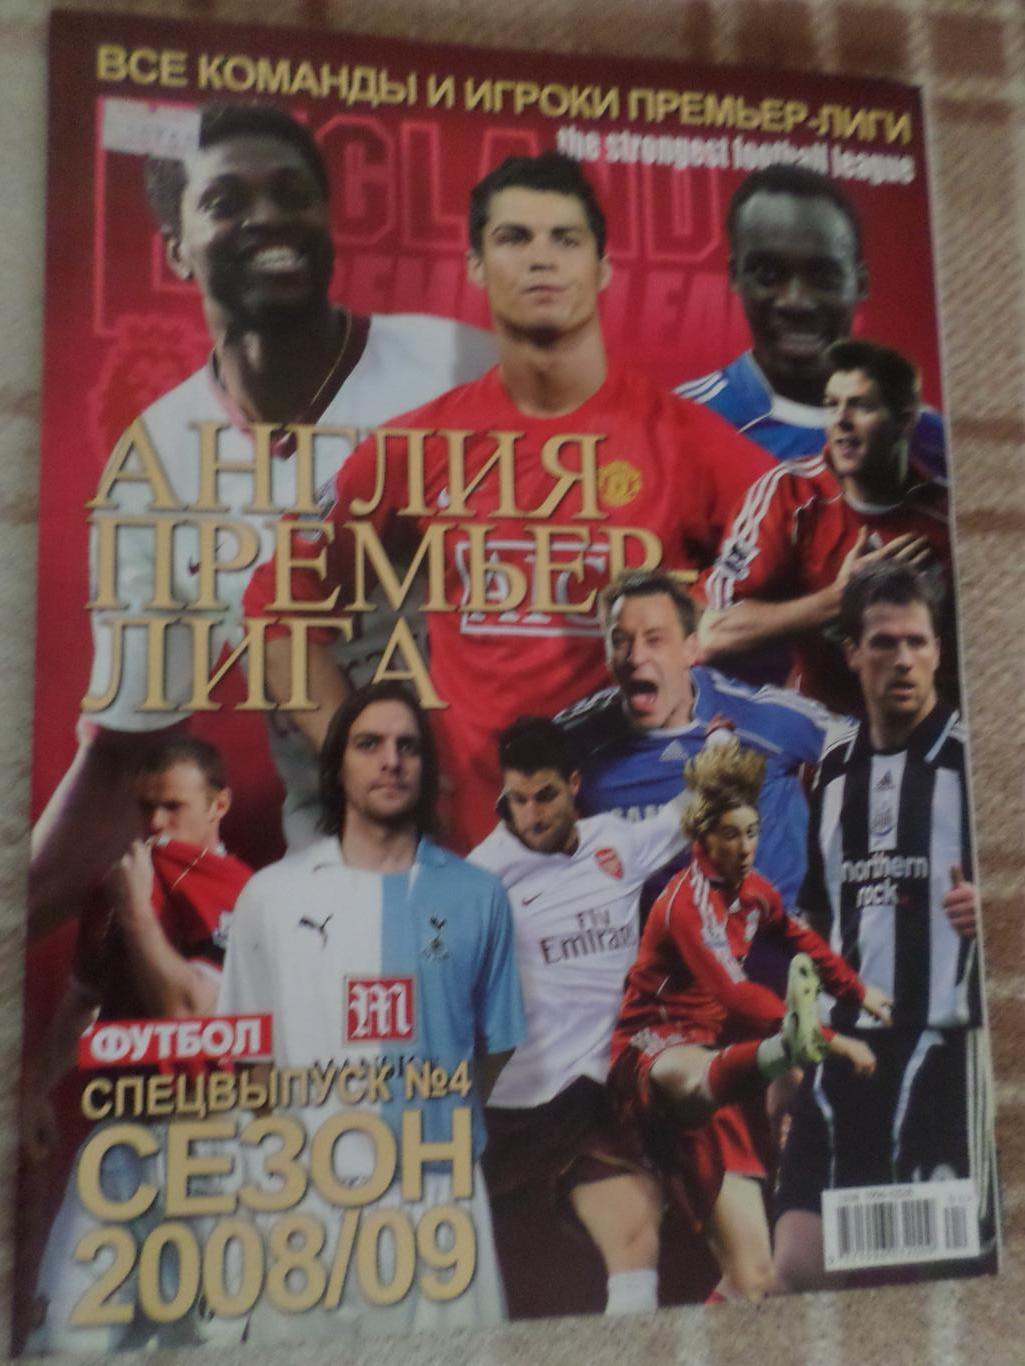 Еженедельник Футбол (Киев) спецвыпуск № 4 2008 г Англия Премьер-лига 2008-2009